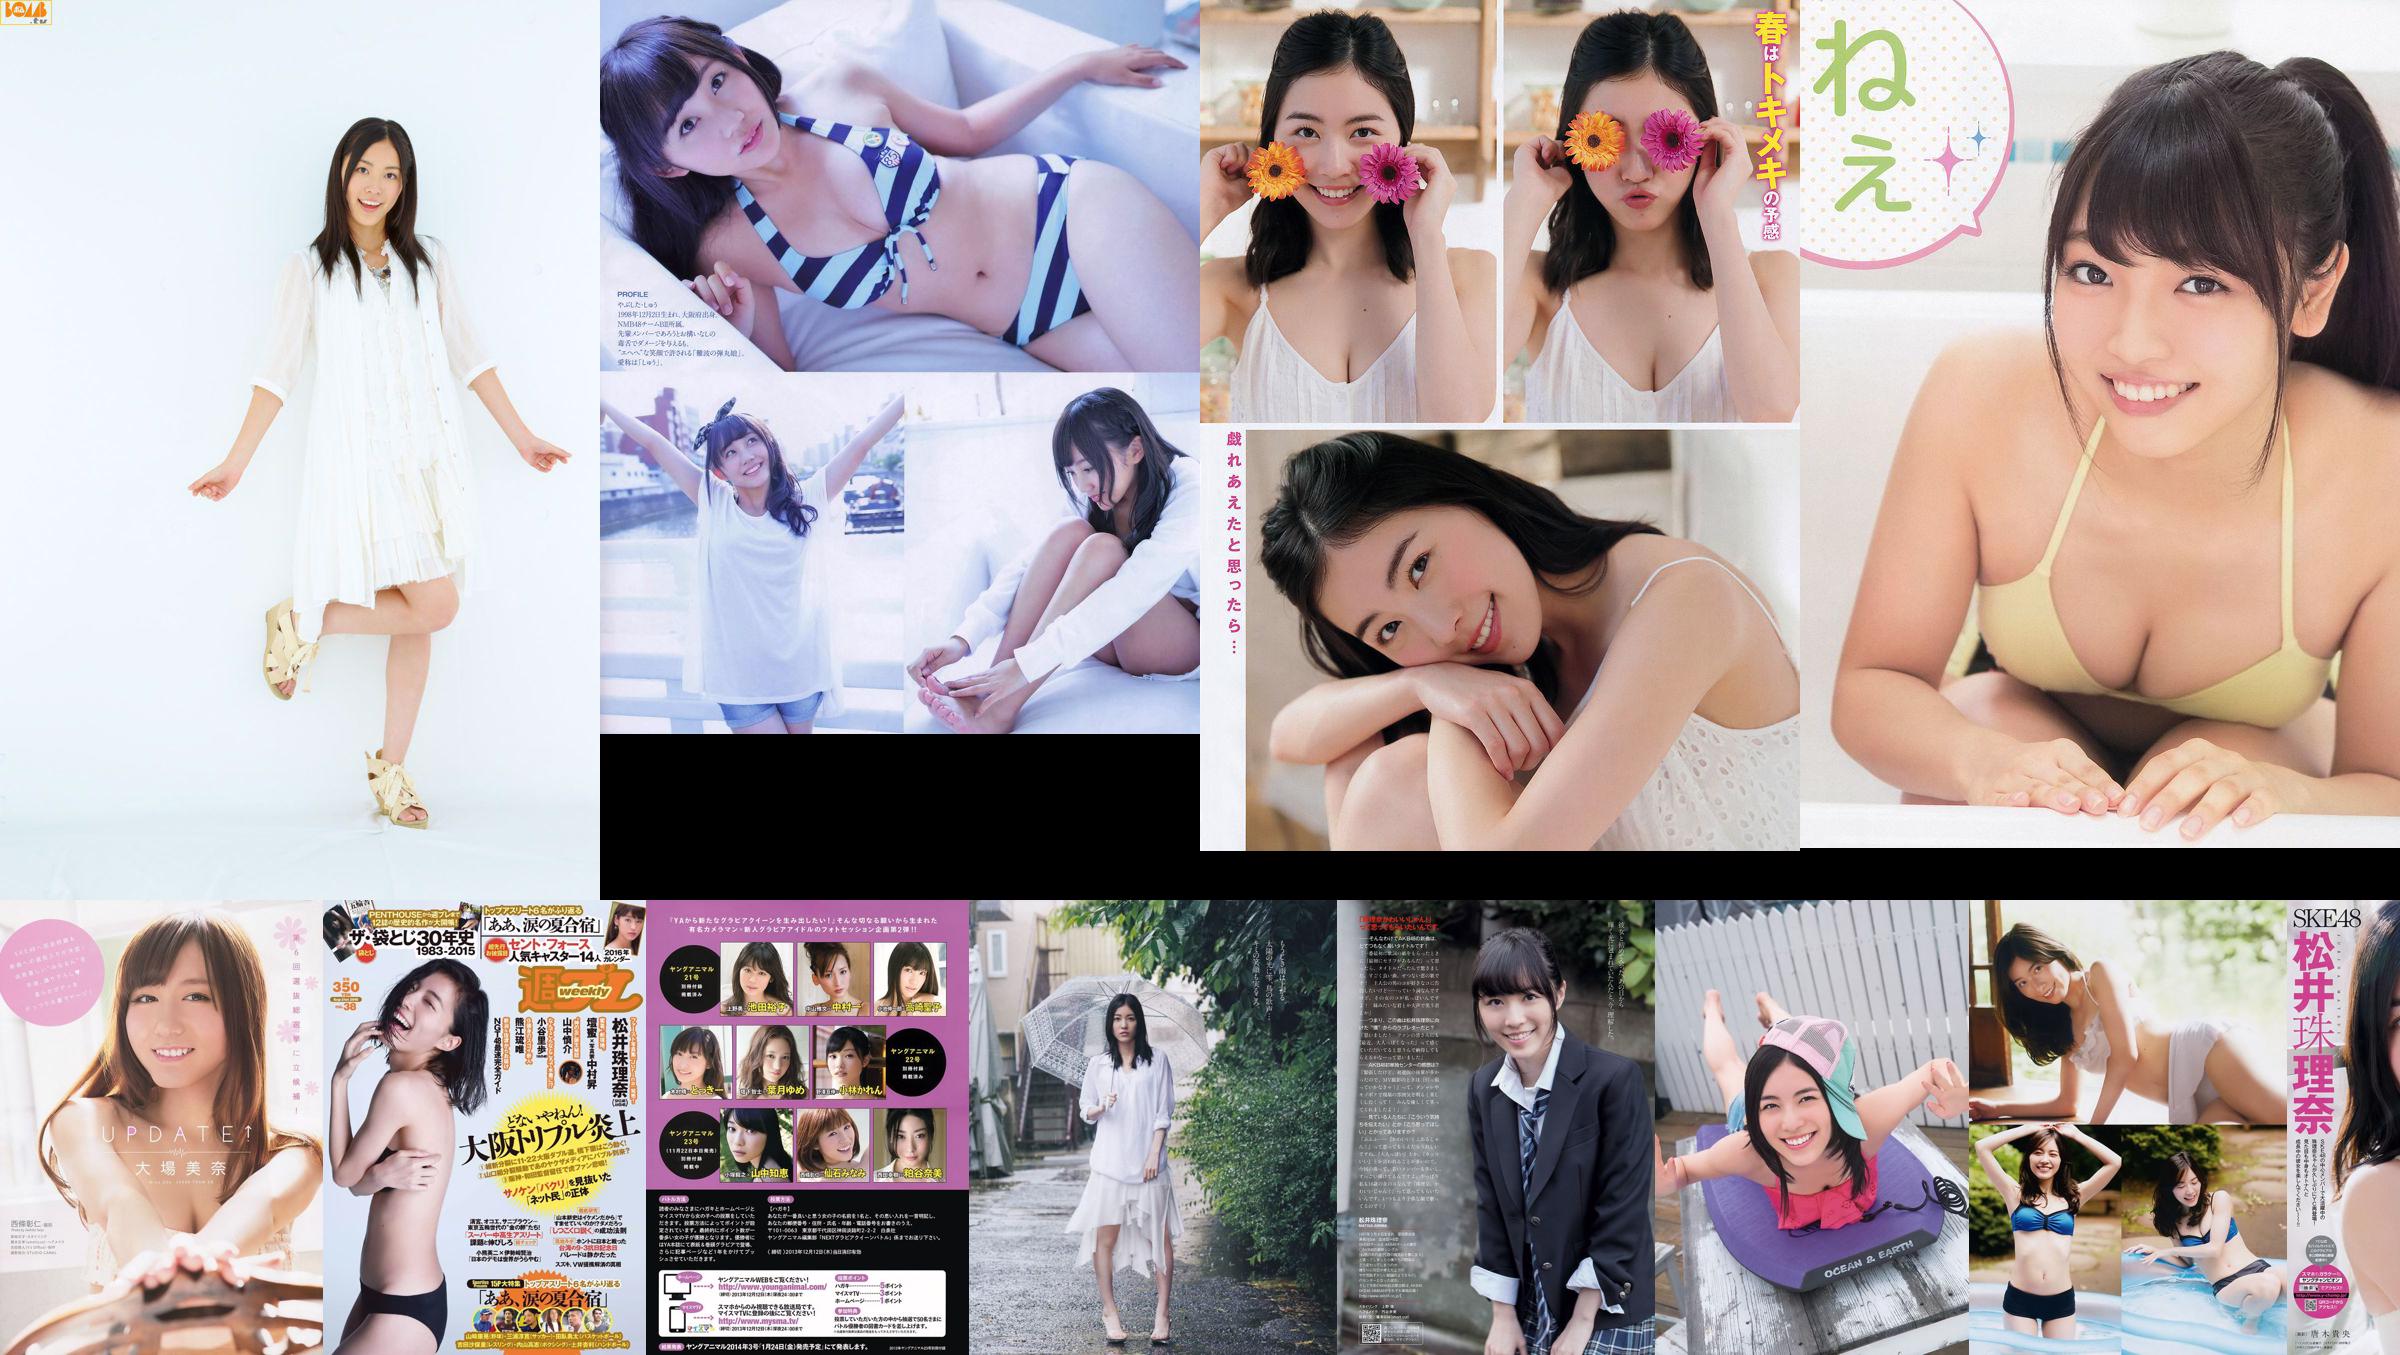 [FLASH] Jurina Matsui Manami Hashimoto Mariko Seyama Akane Takayanagi Mana Sakura 2015.10.13 Foto Moshi No.e8b8d2 Página 1